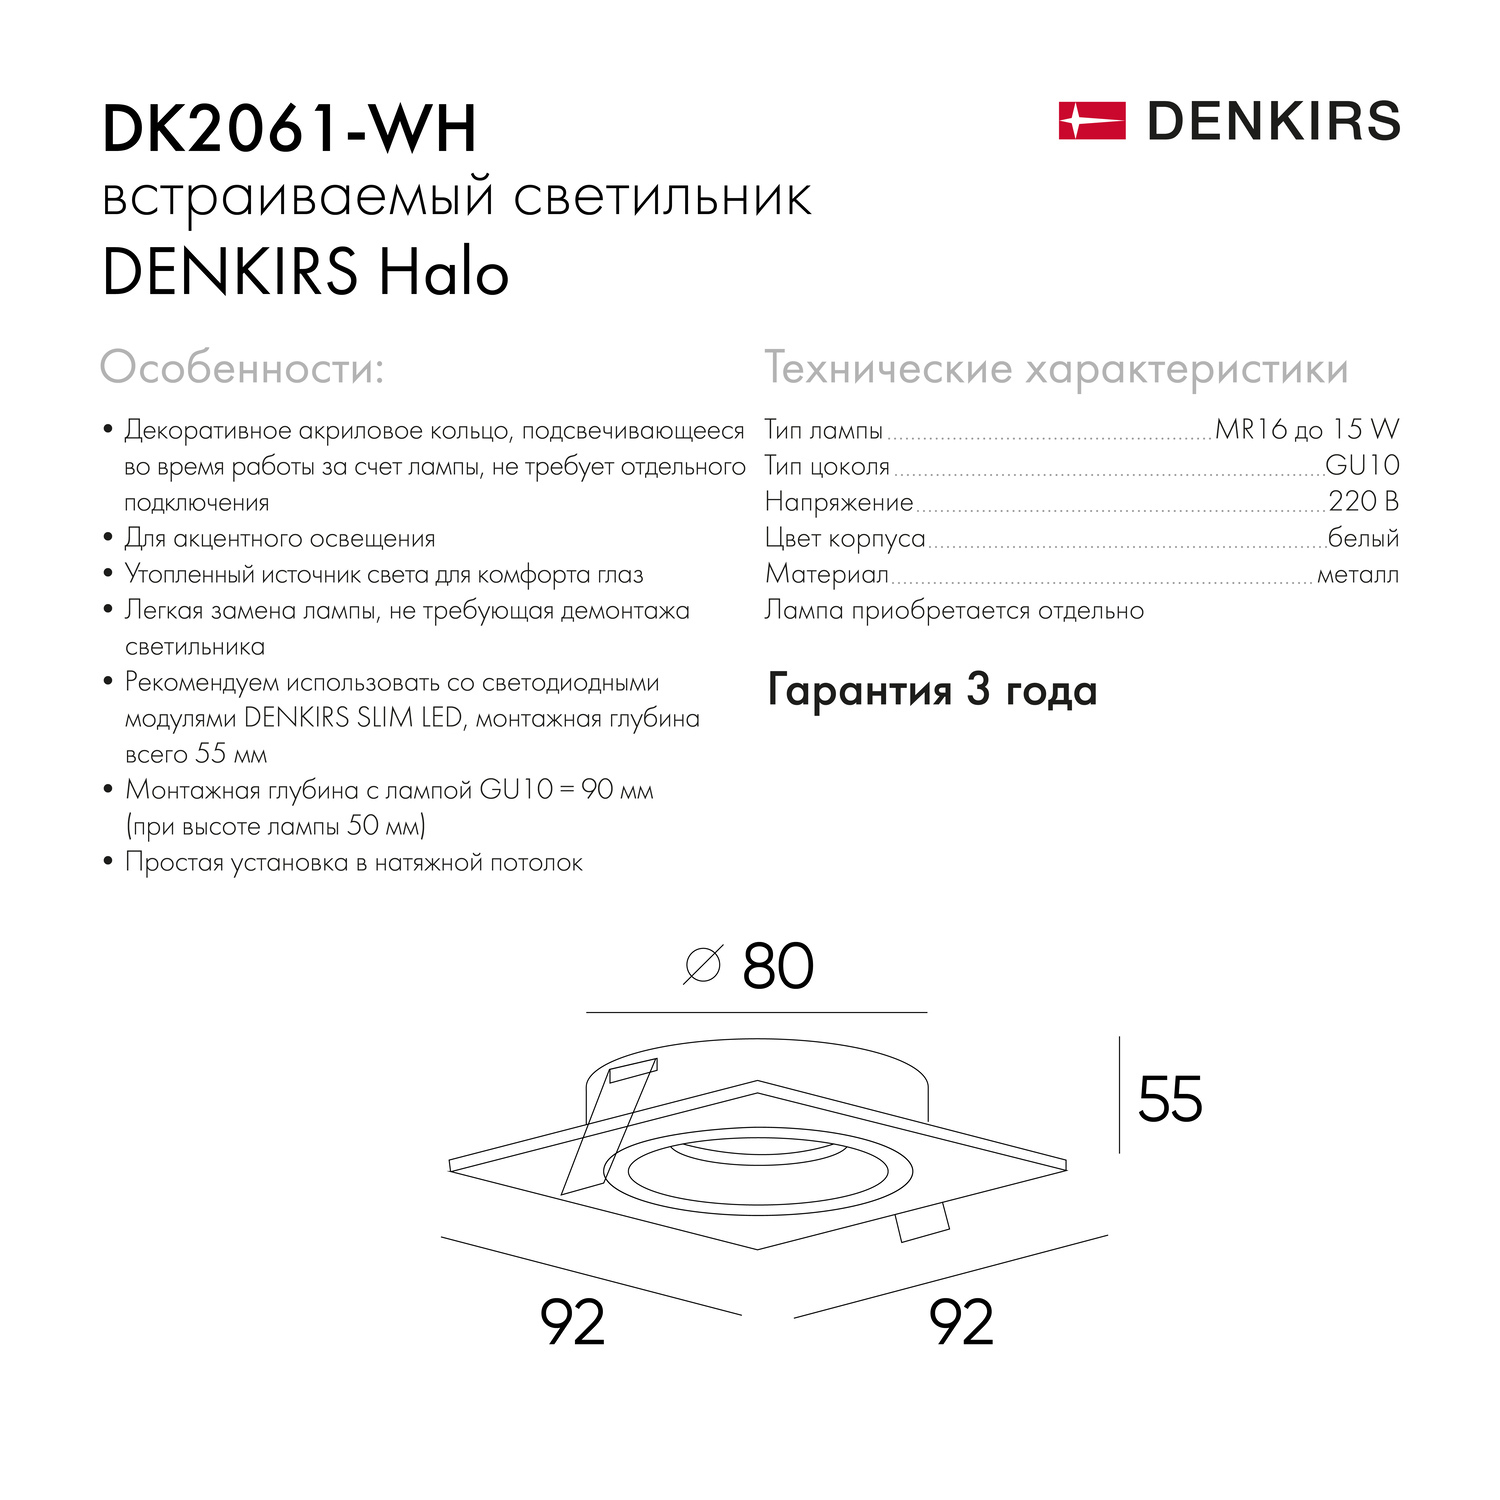 DK2061-WH